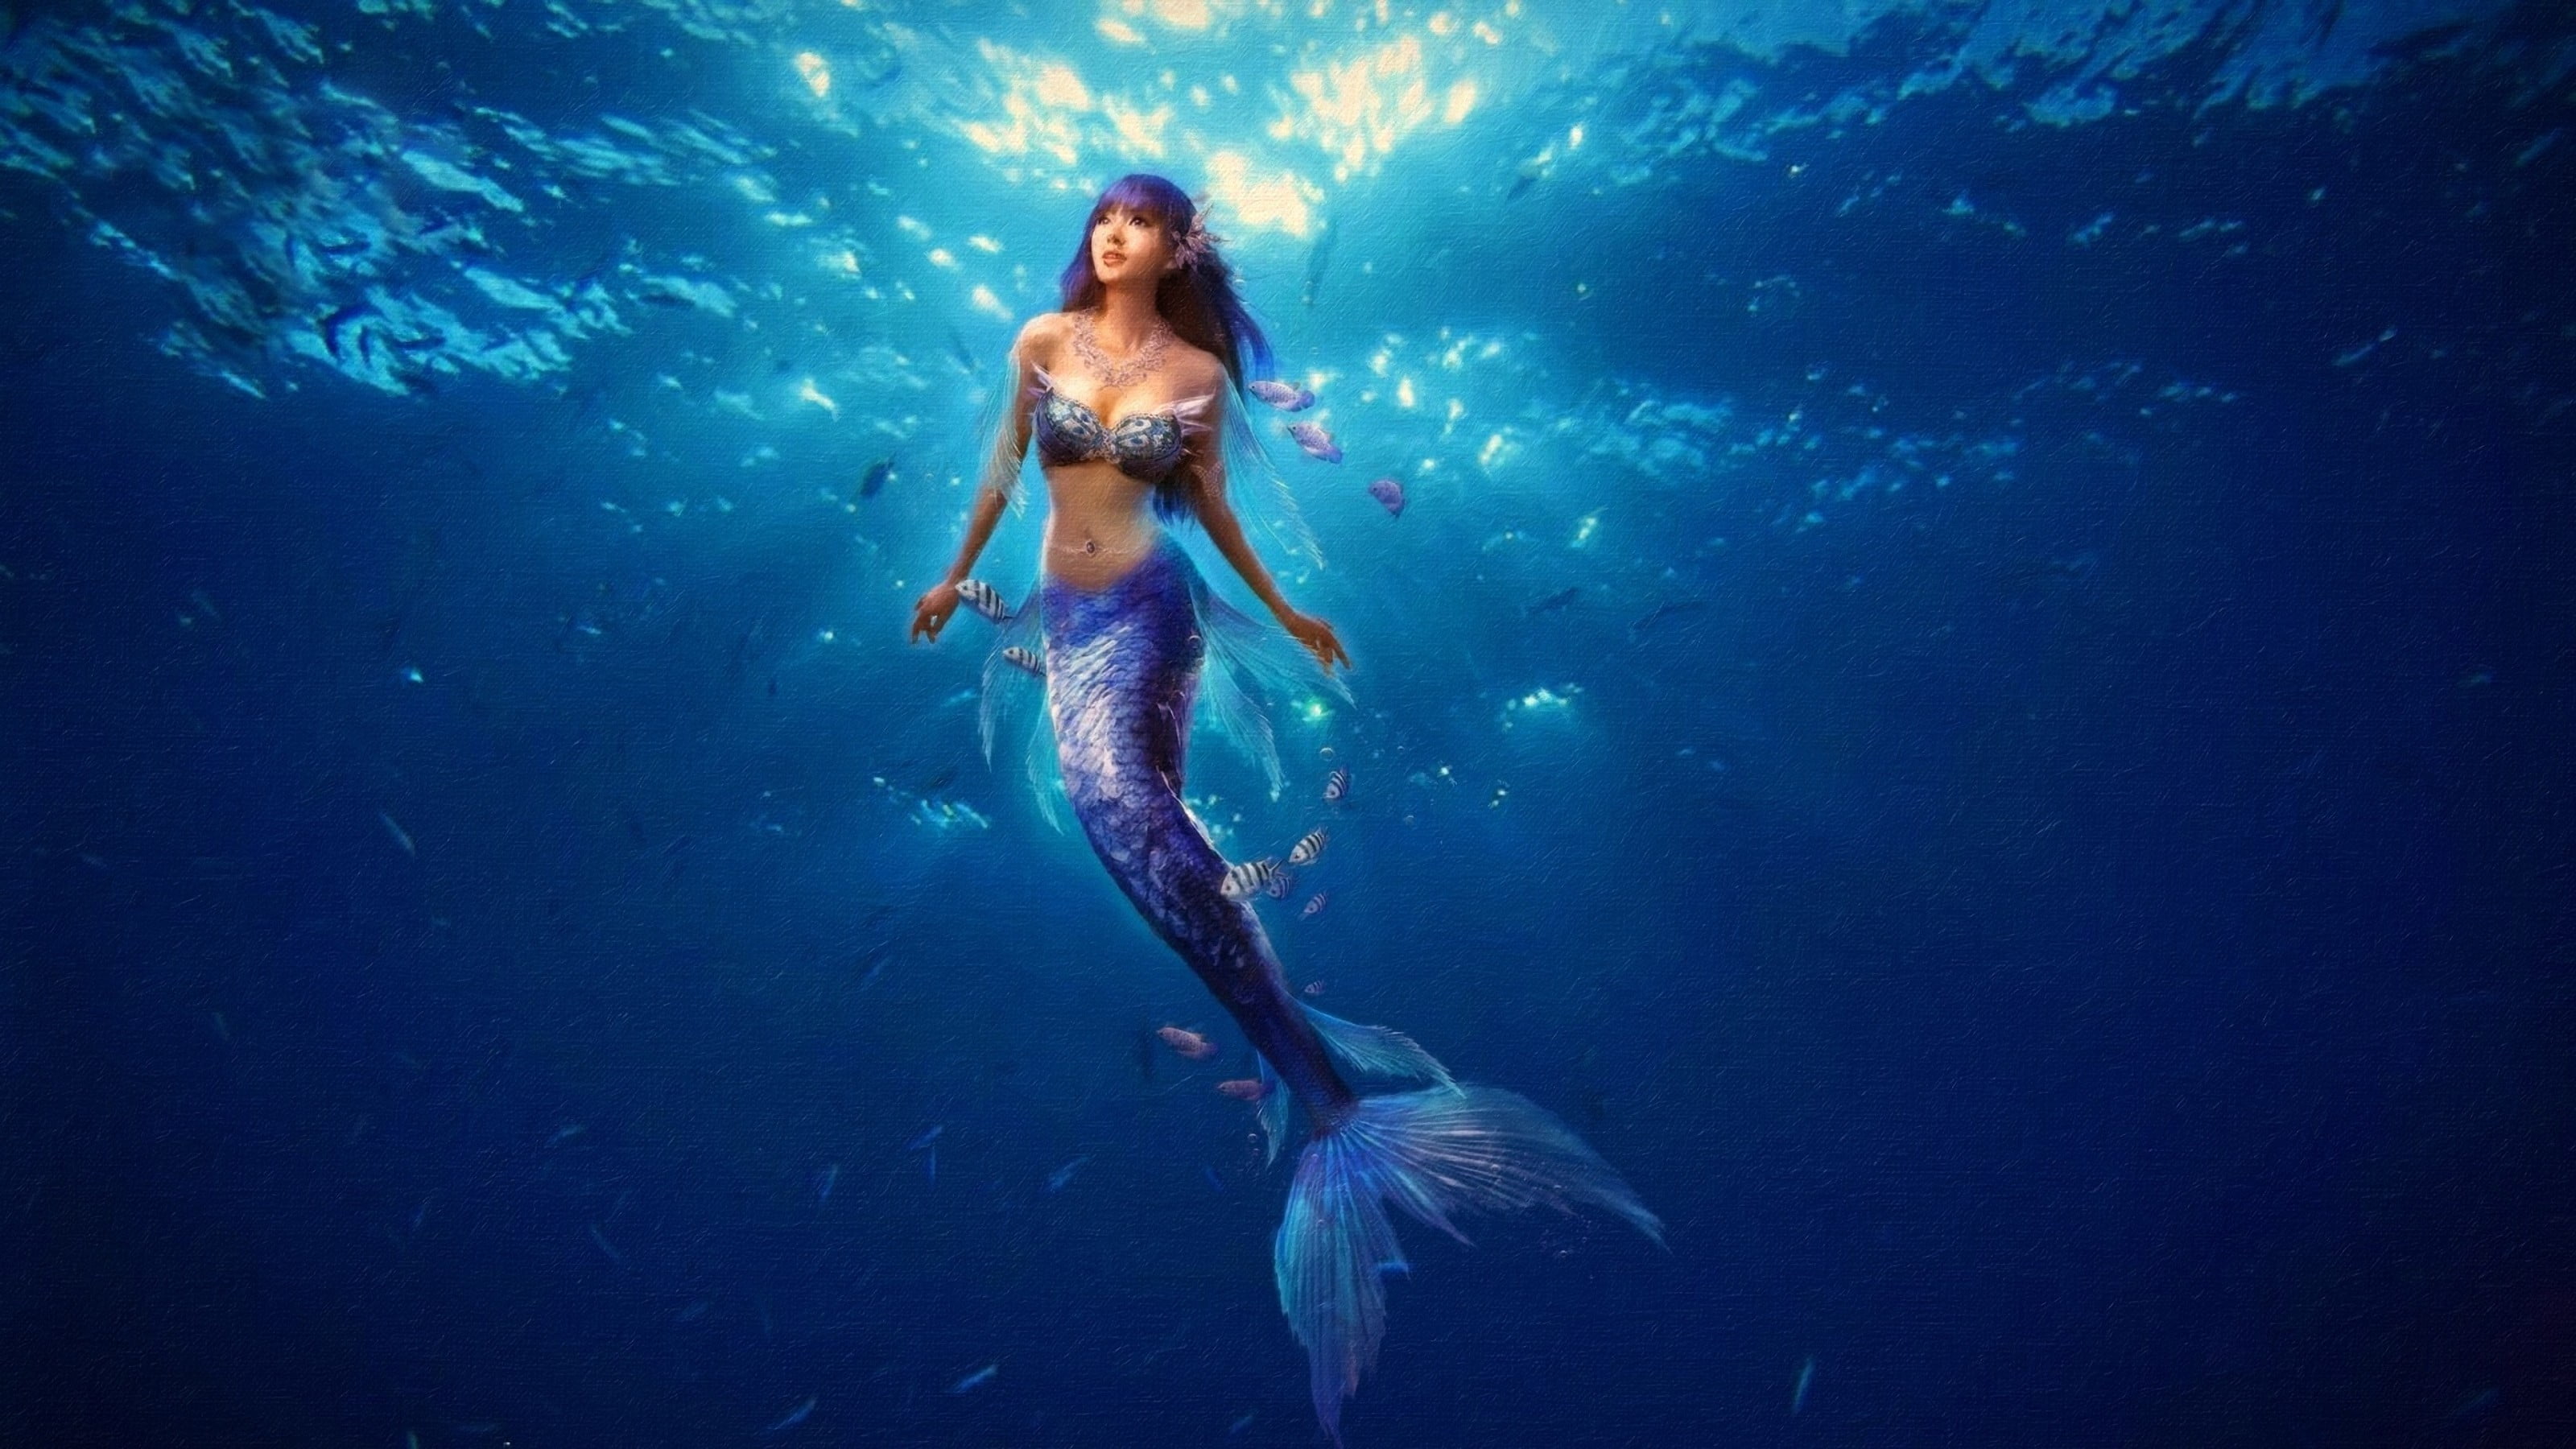 mermaid illustration, mermaids, underwater, sea, undersea, young adult